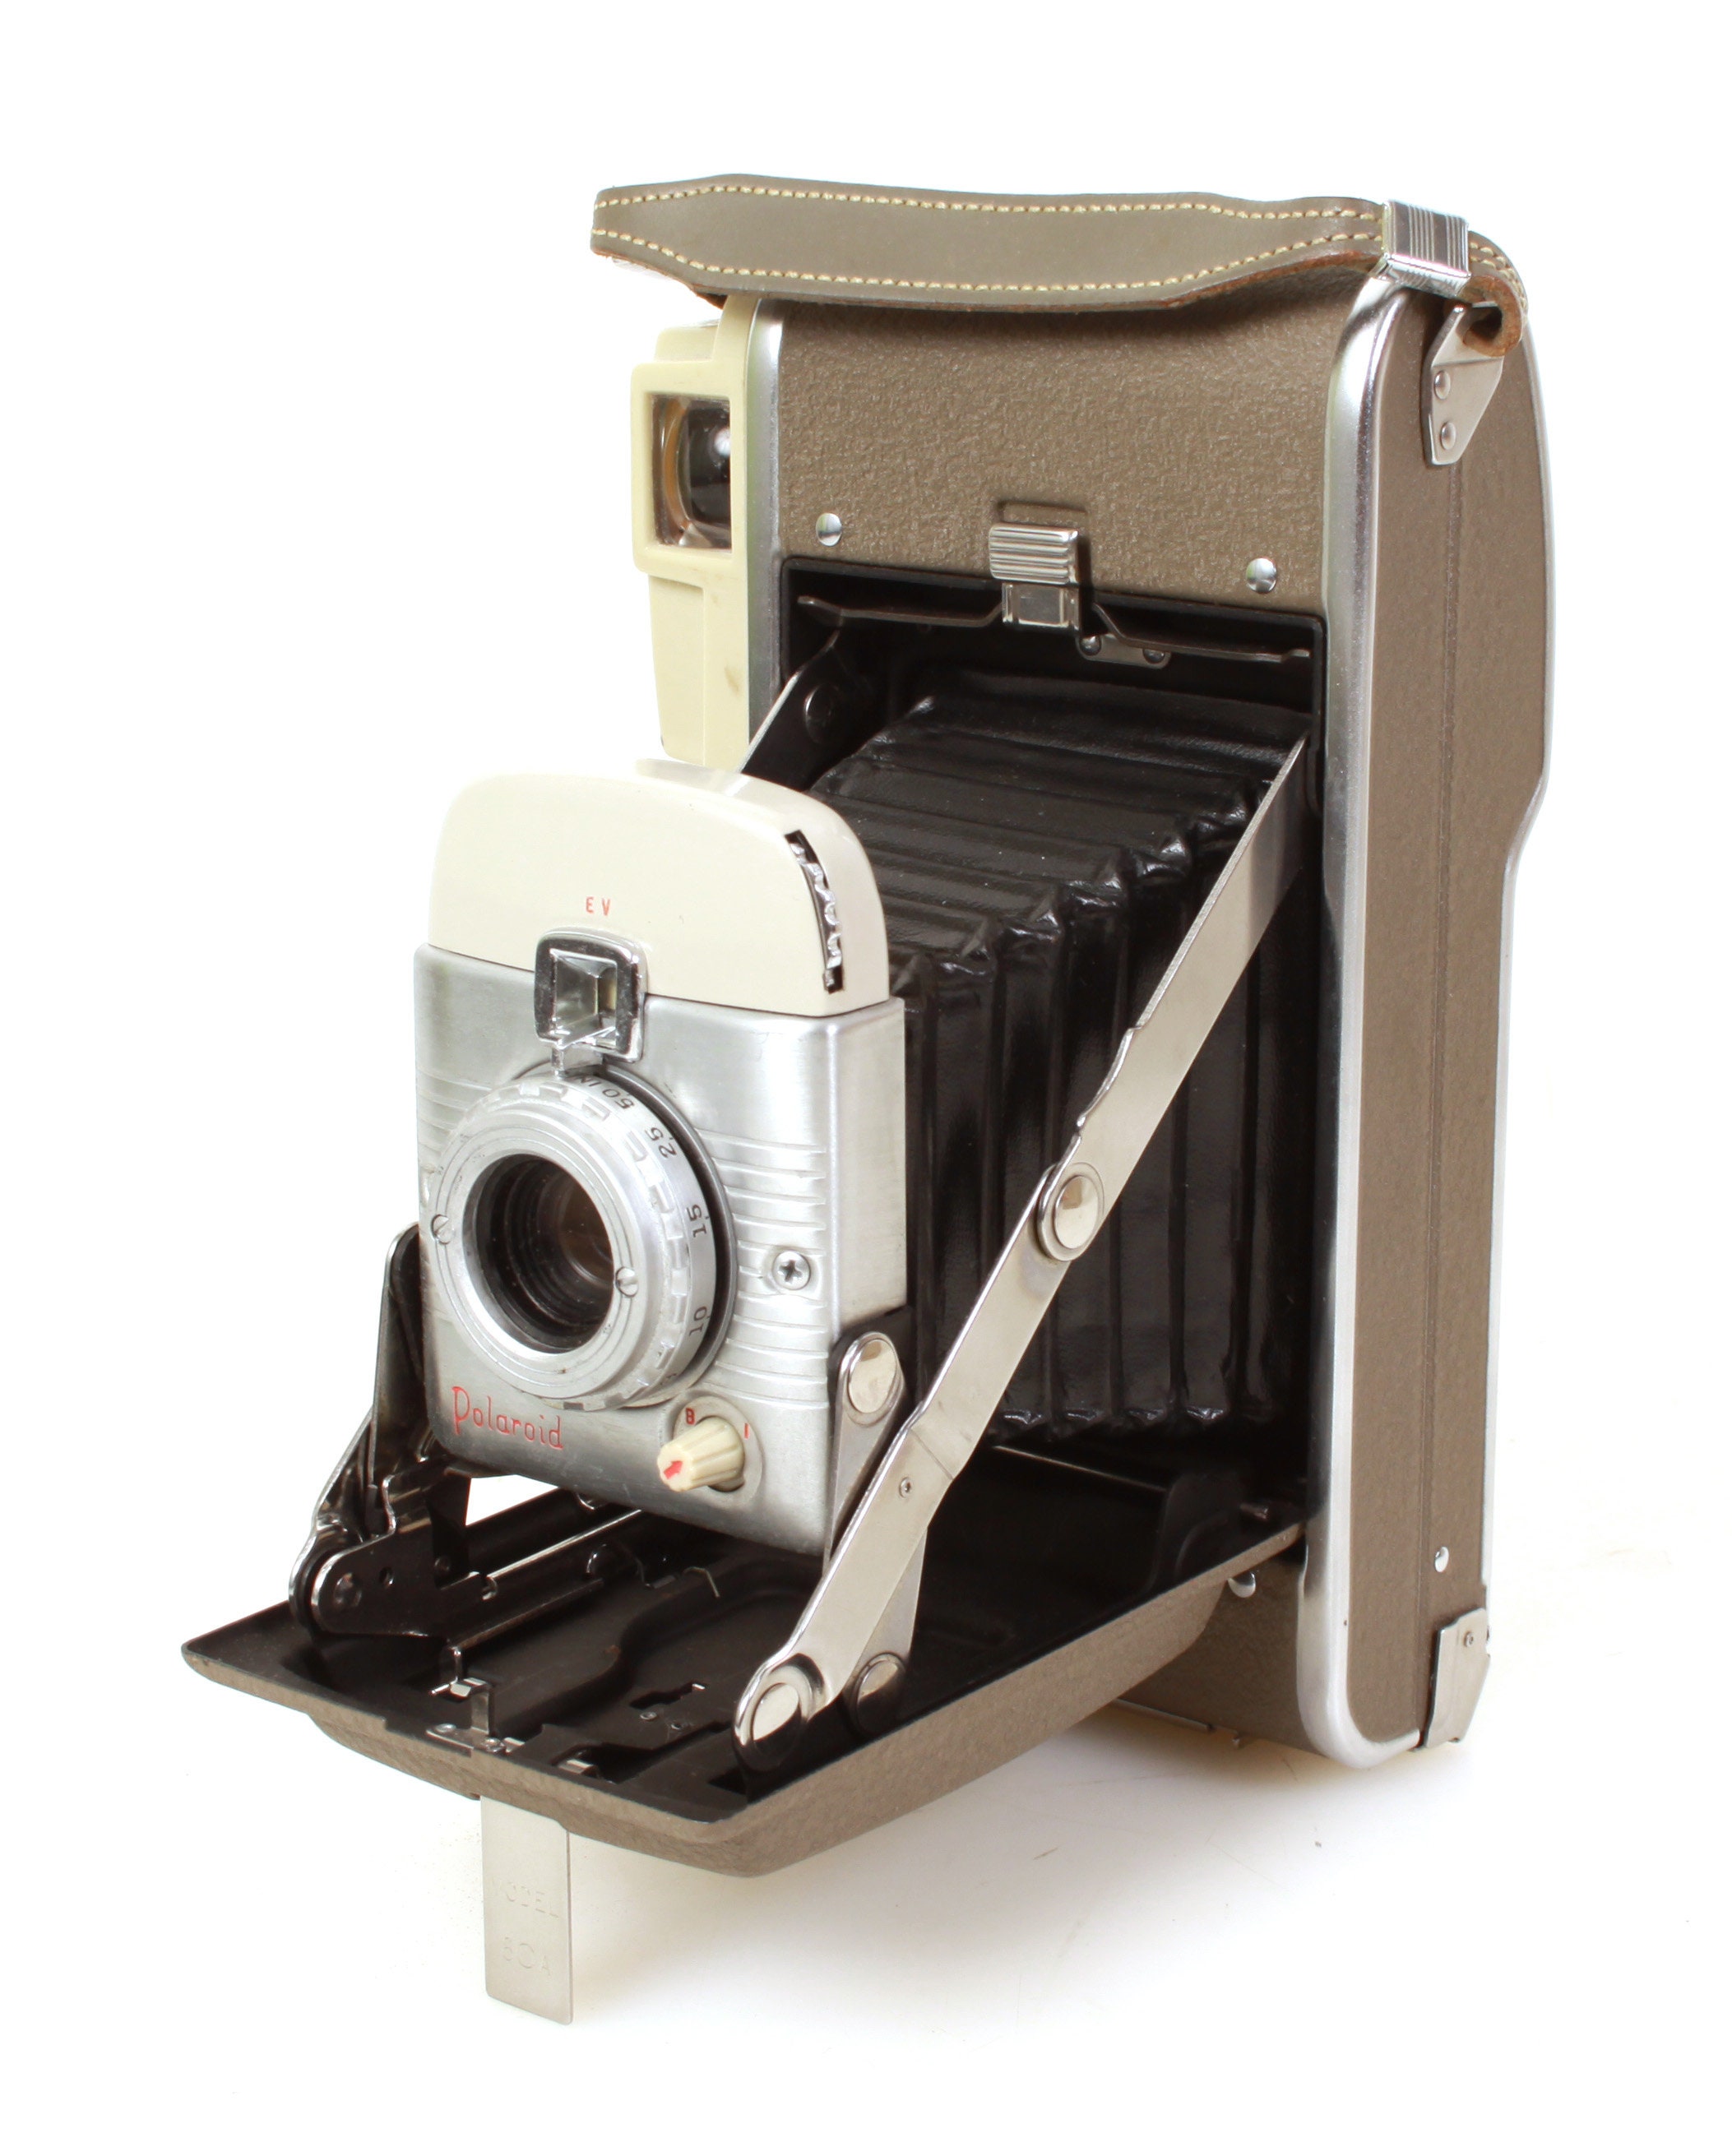 Macchina fotografica Polaroid anni '50 Highlander modello 80